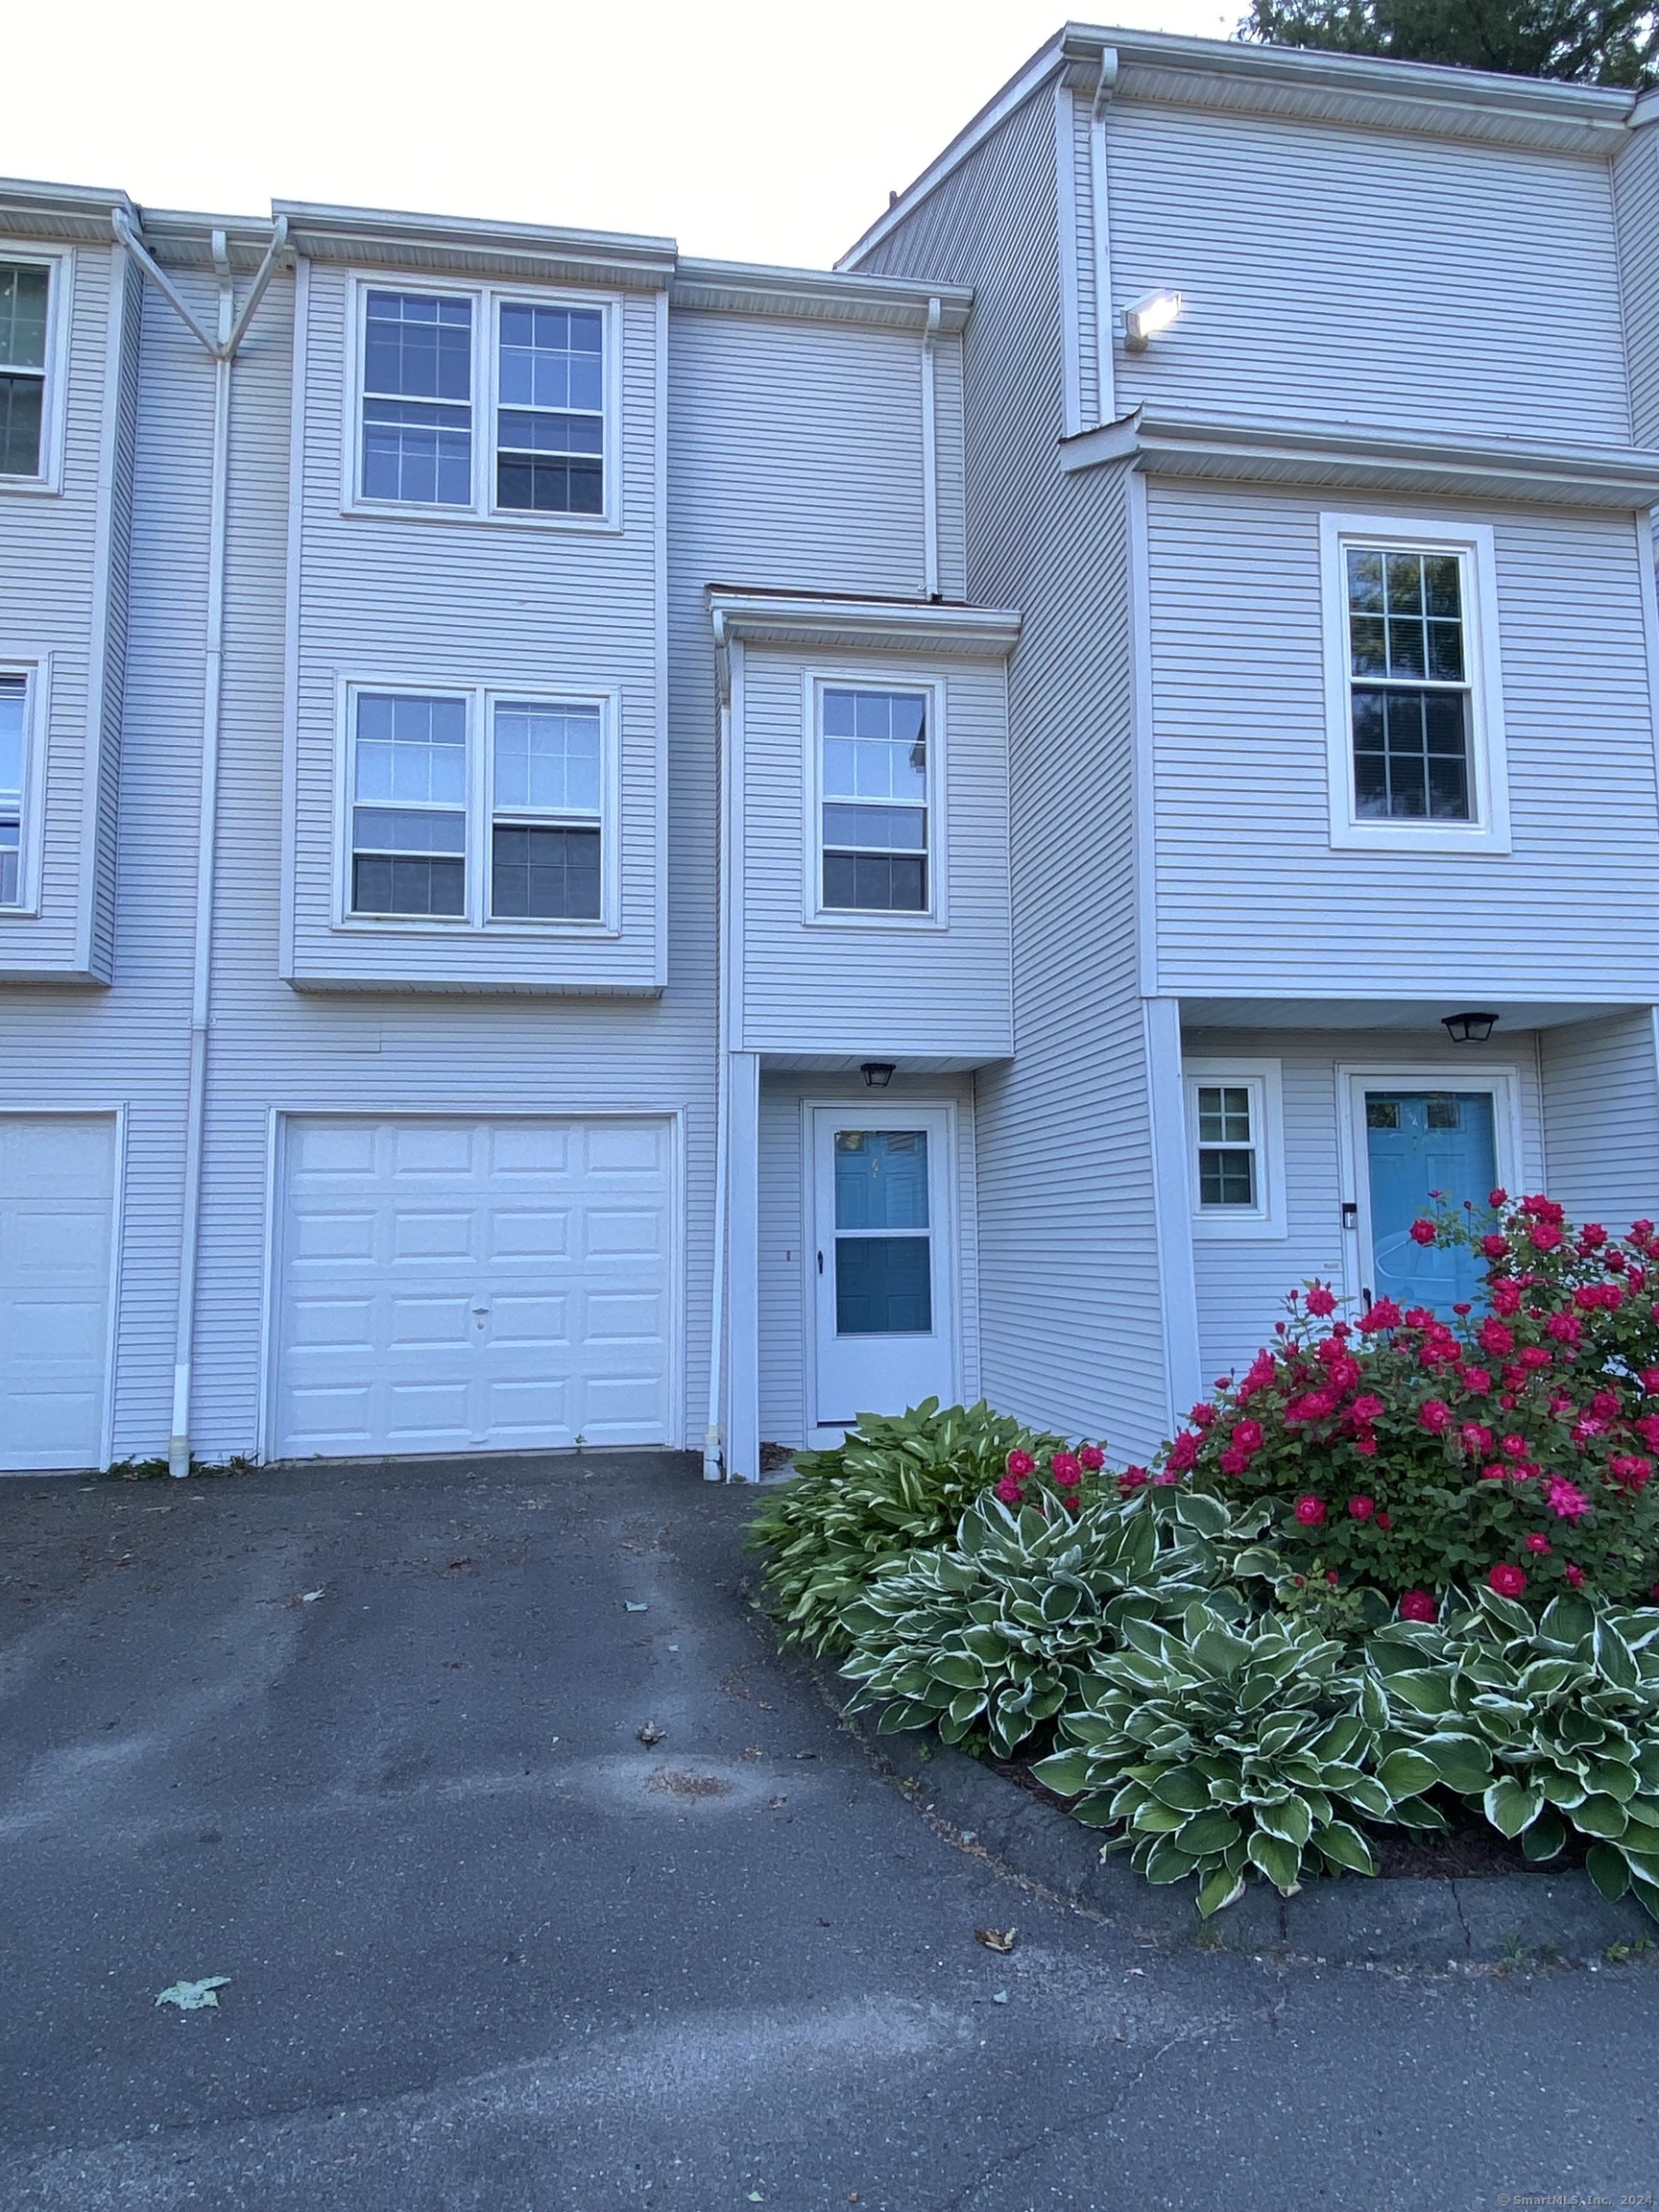 Rental Property at 24 Deerwood Lane 6, Waterbury, Connecticut - Bedrooms: 2 
Bathrooms: 2 
Rooms: 4  - $1,550 MO.